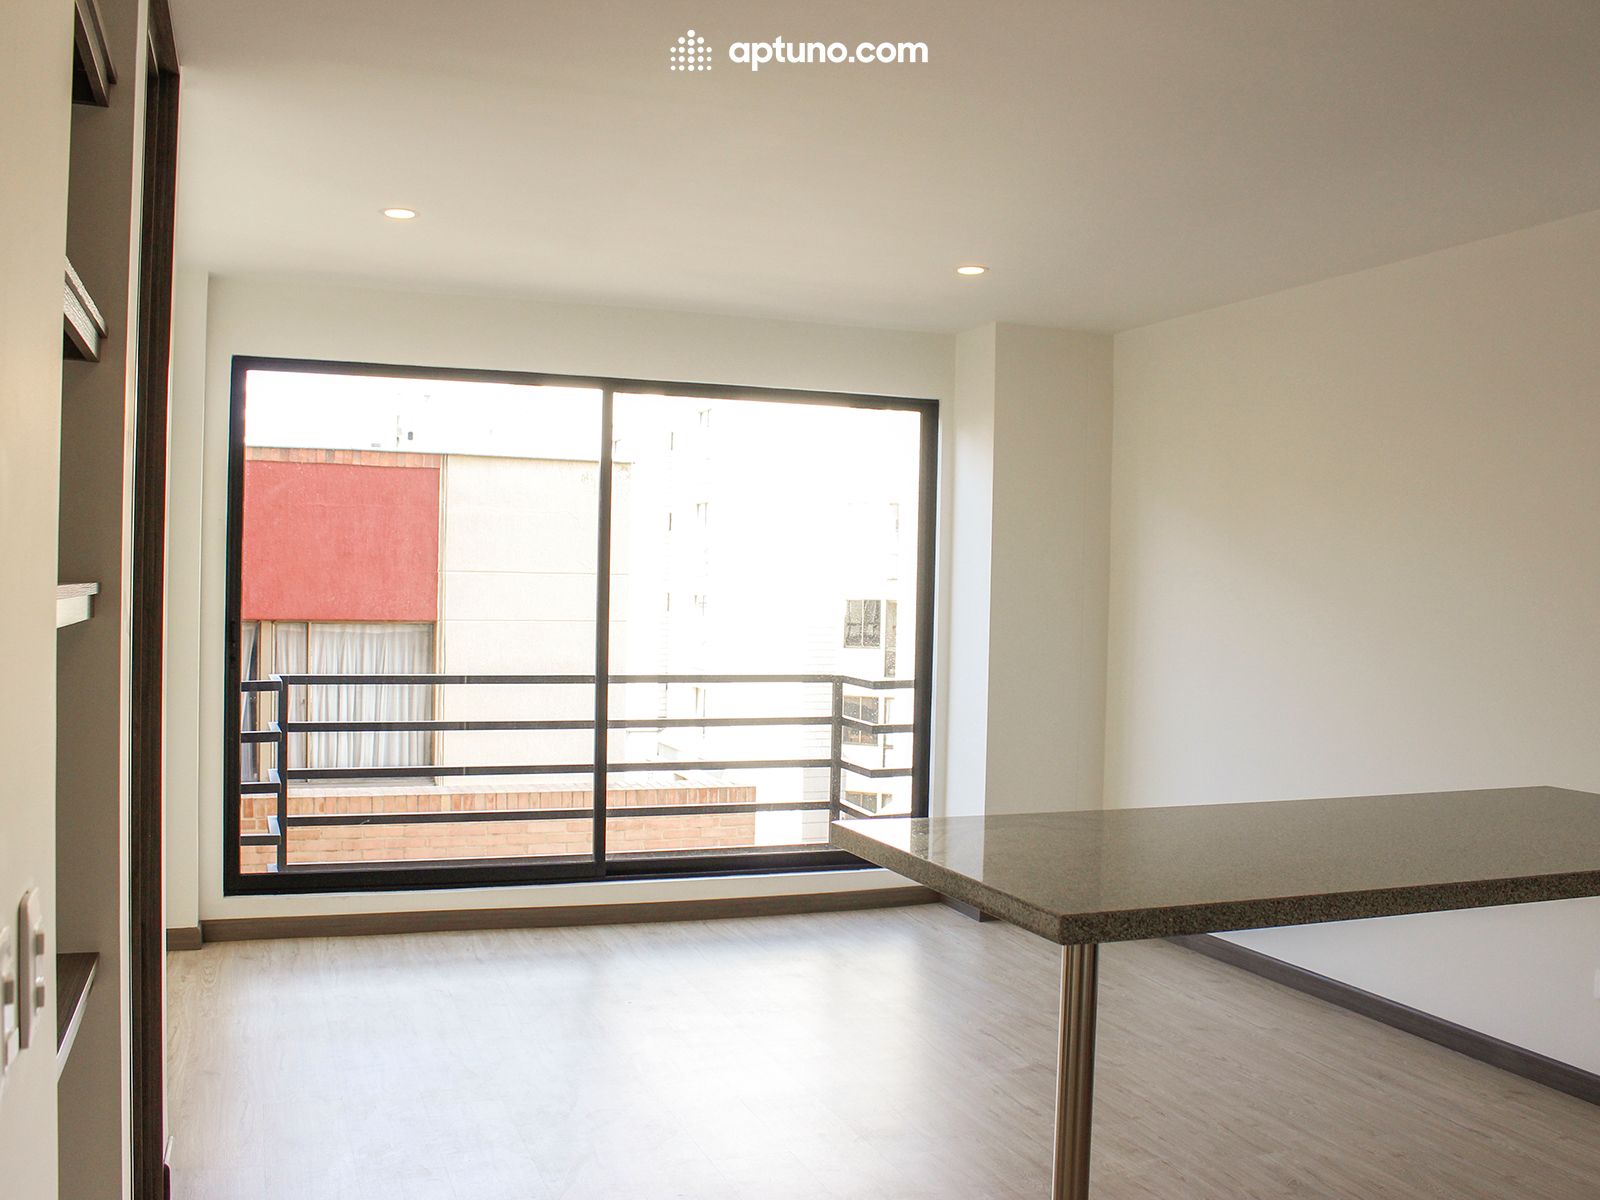 Apartamento en arriendo Caobos Salazar 56 m² - $ 2.160.000